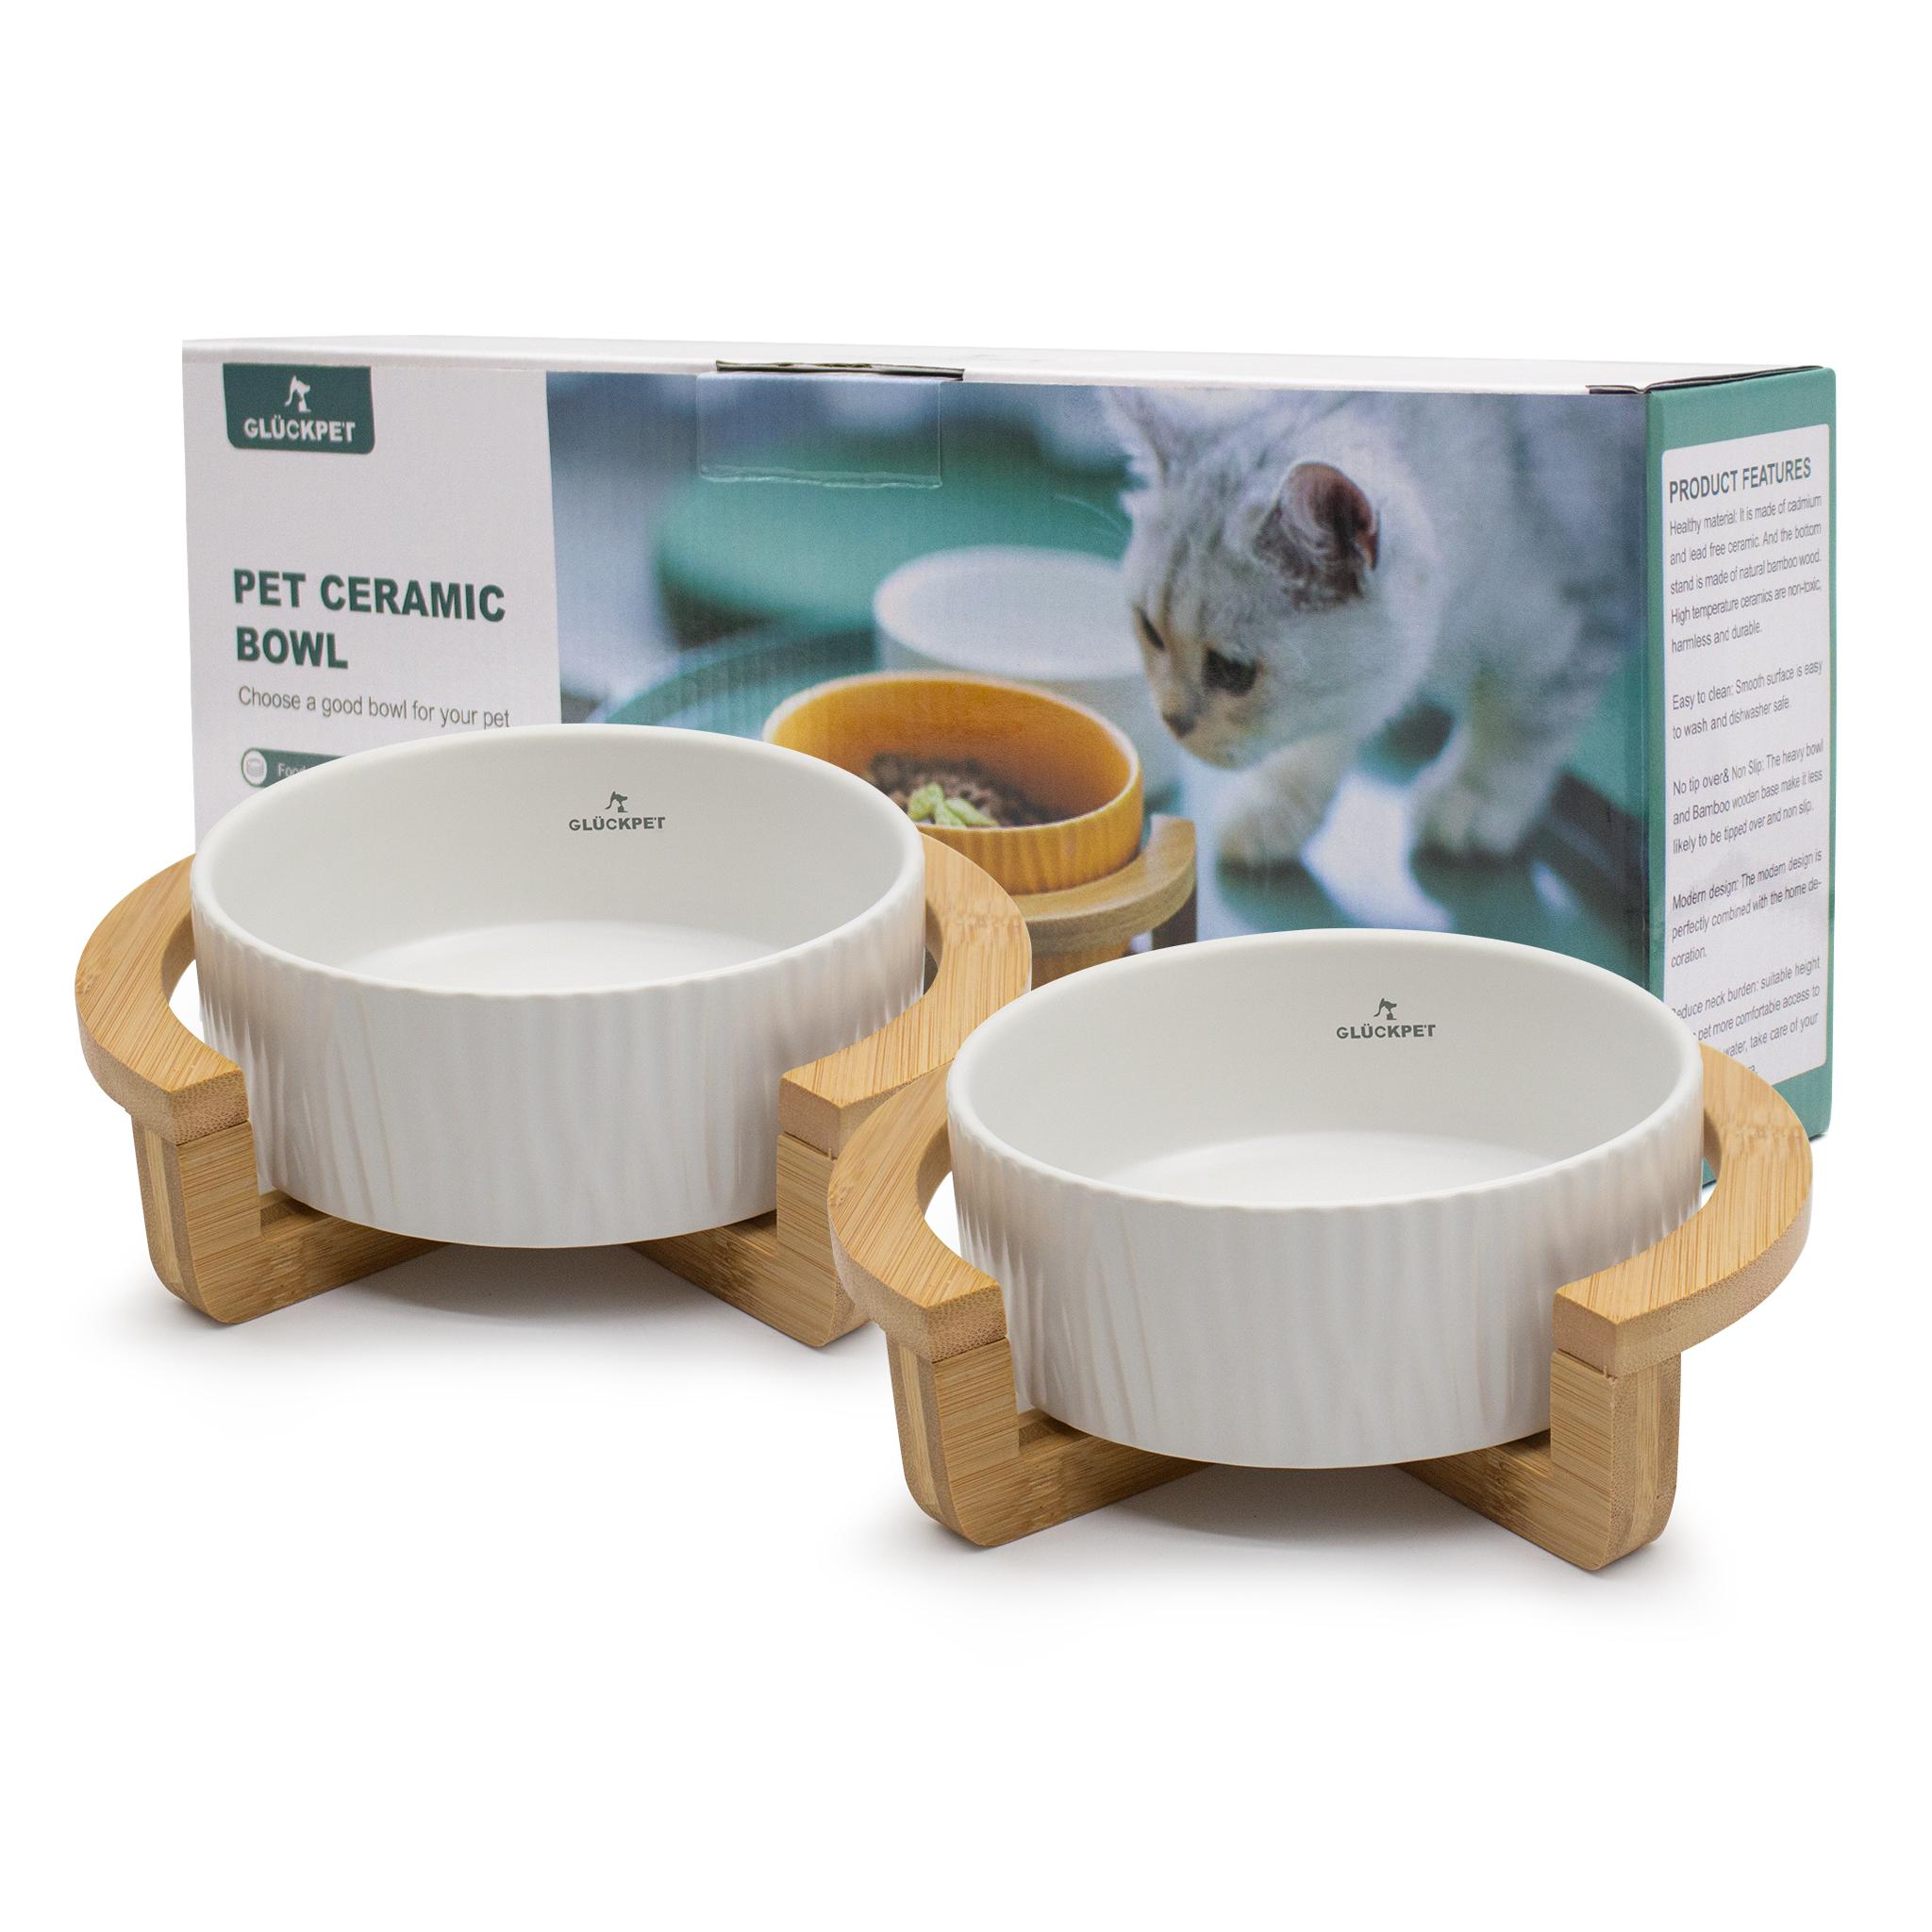 Juego de 2 comederos de cerámica GLÜCKPET® con base de madera de bambú para tu mascota por sólo 6,99€ ¡¡53% de descuento!!